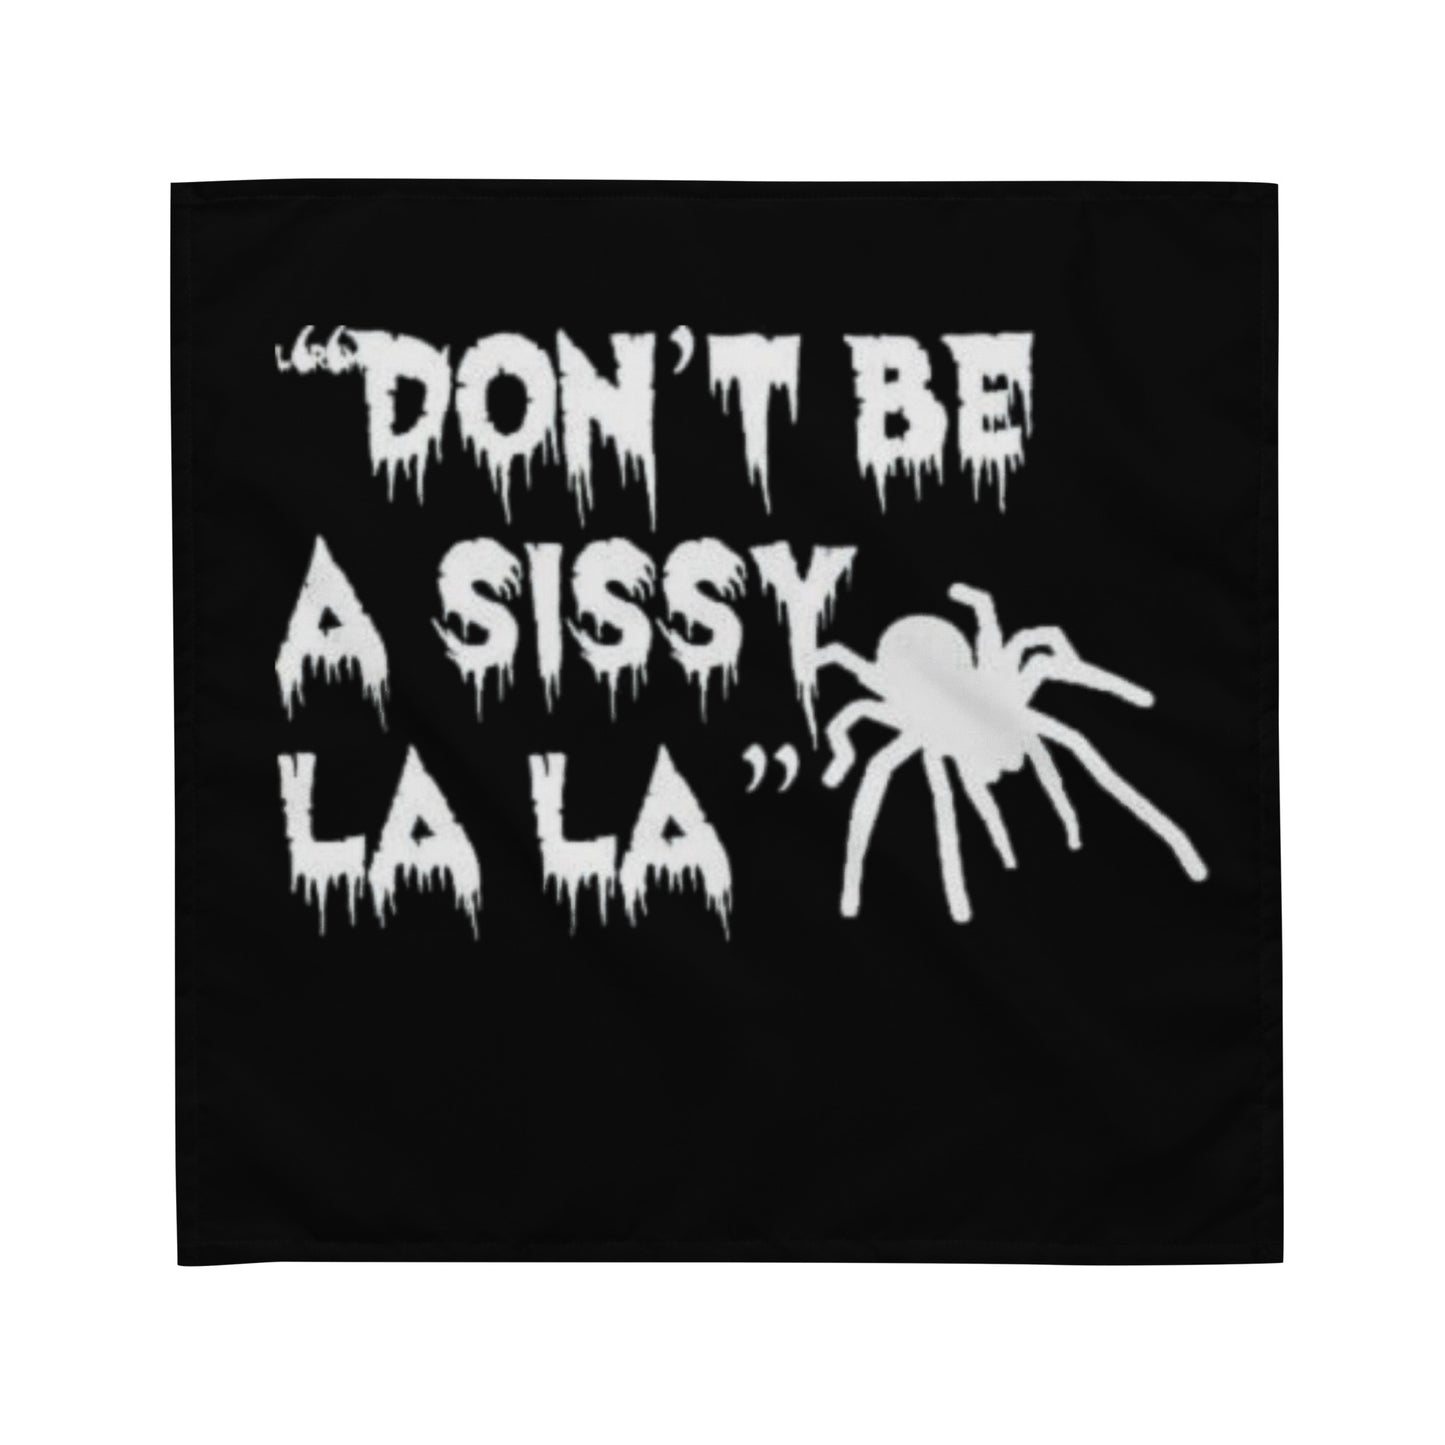 Don't be a Sissy La La bandana